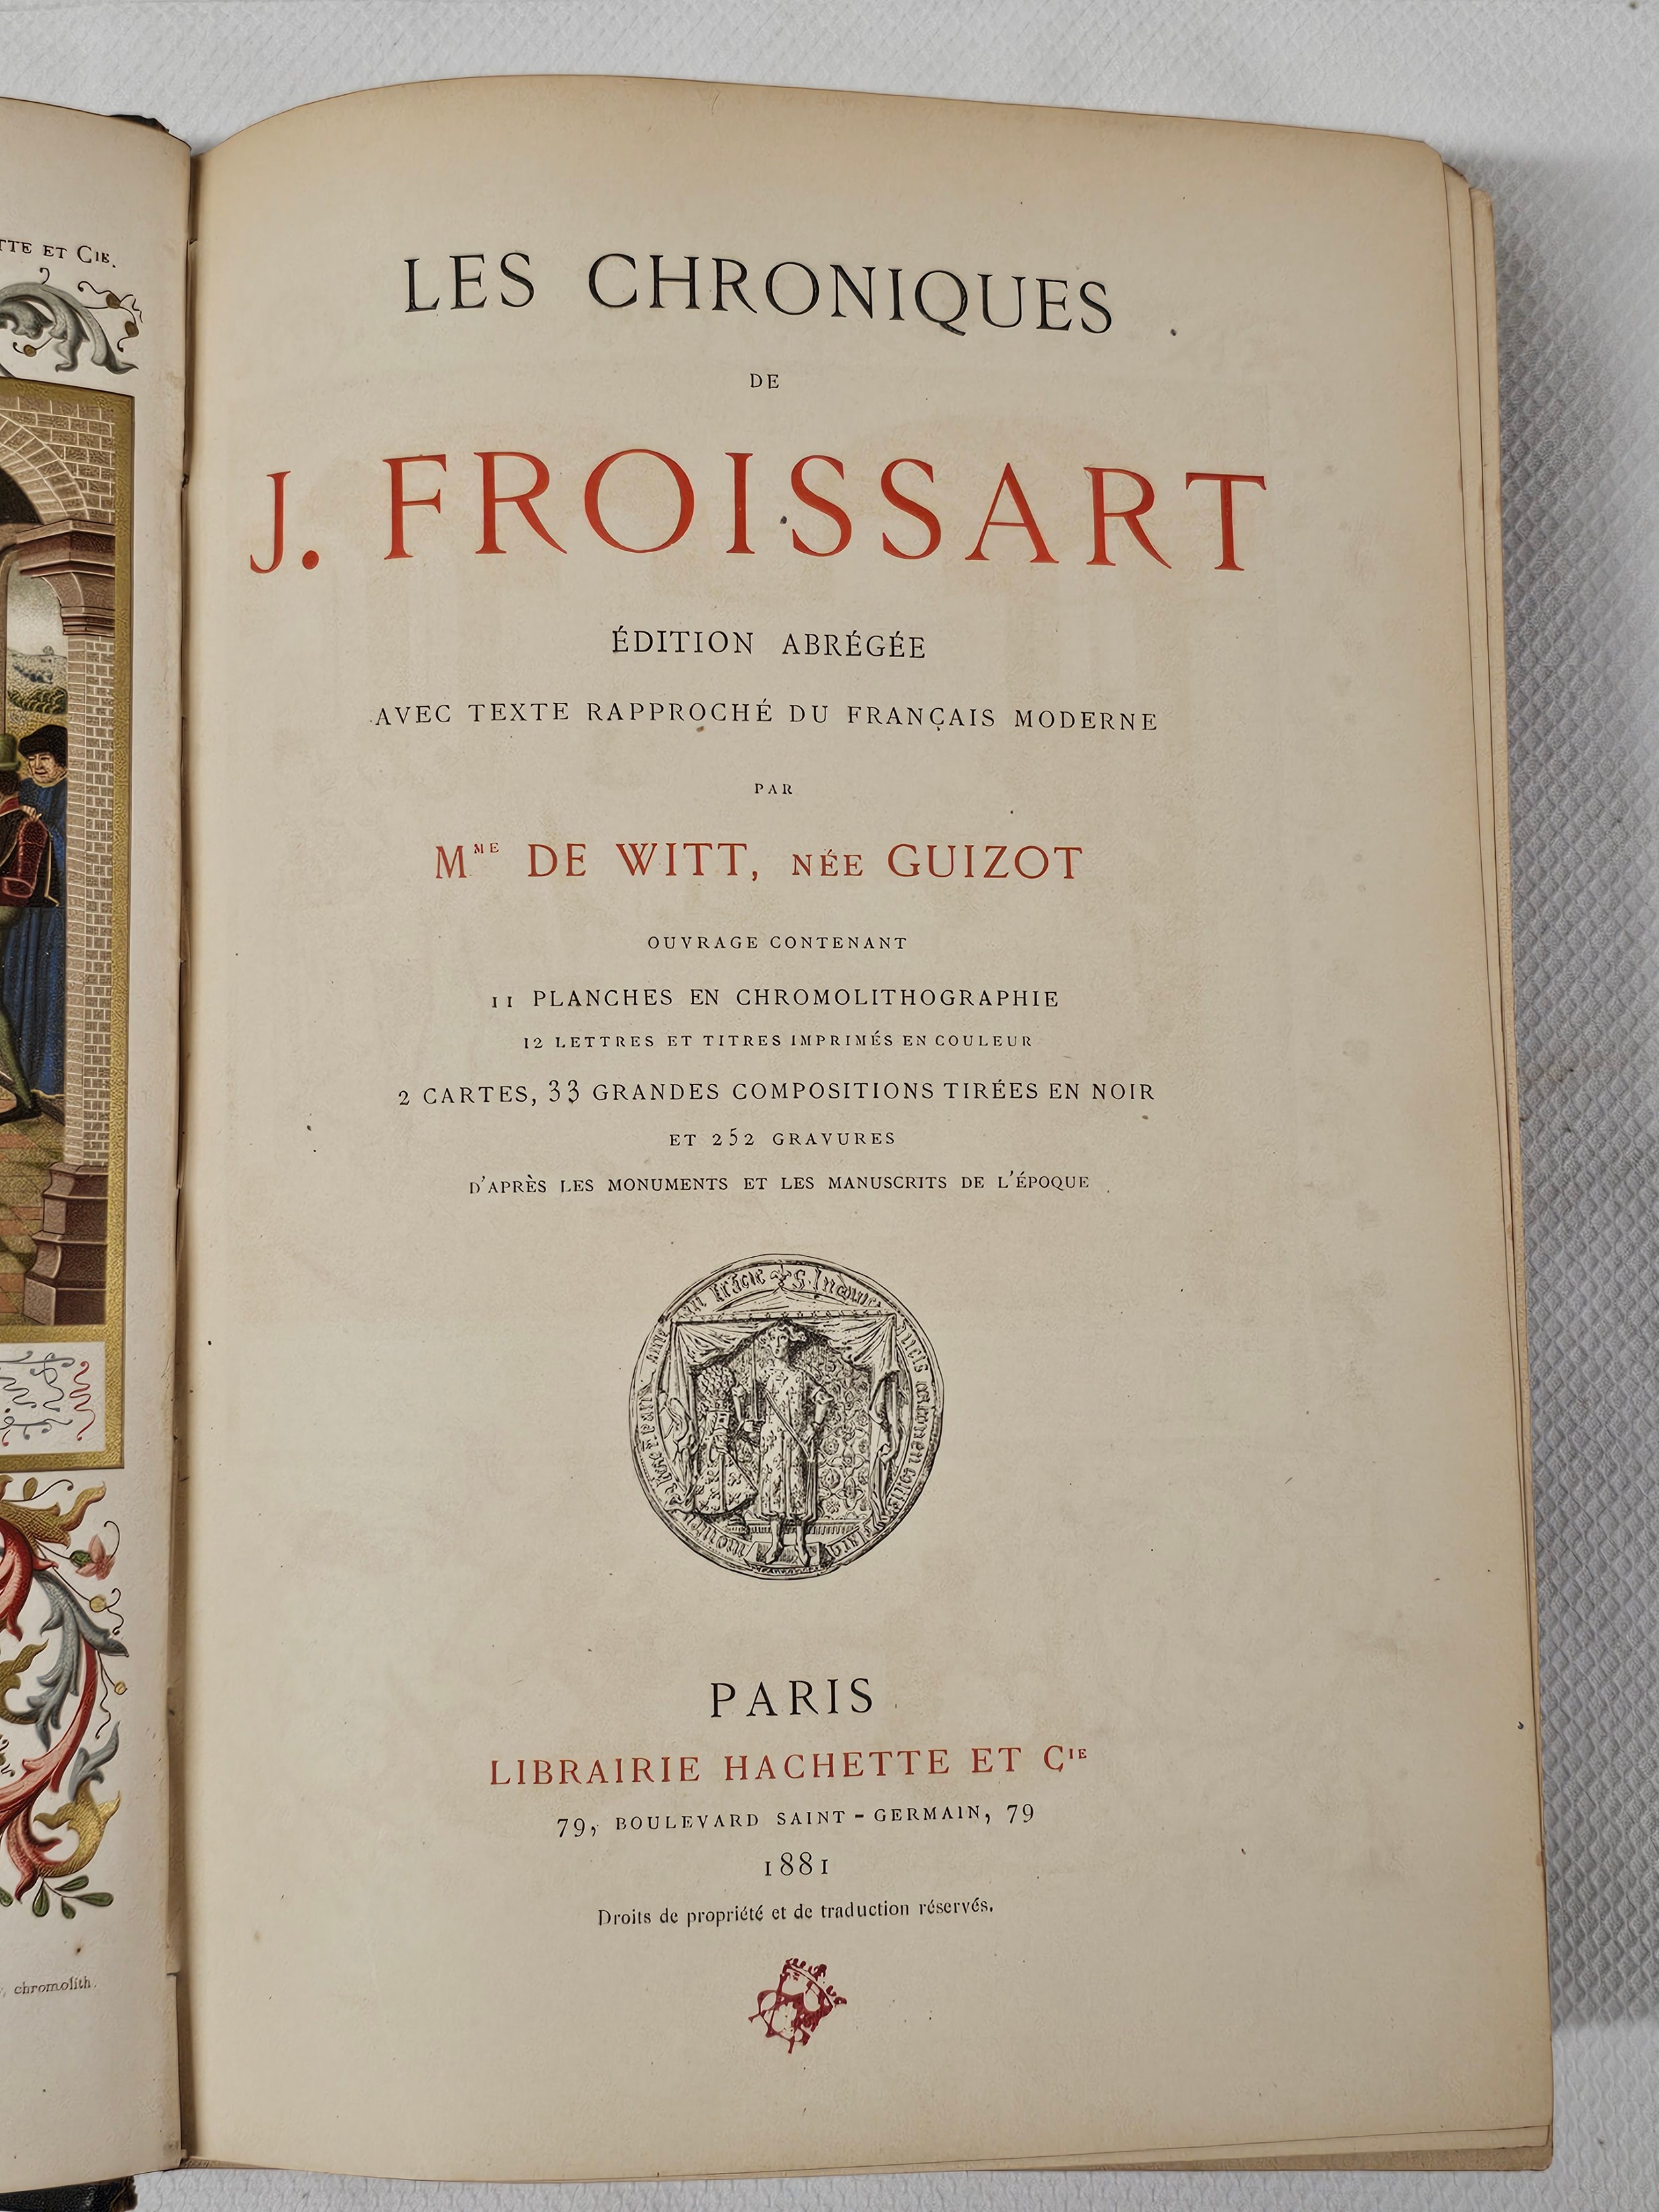 Chroniques De J. Froissart. de Witt, née Guizot. Published by Paris Librairie Hachette 1881. - Image 7 of 9